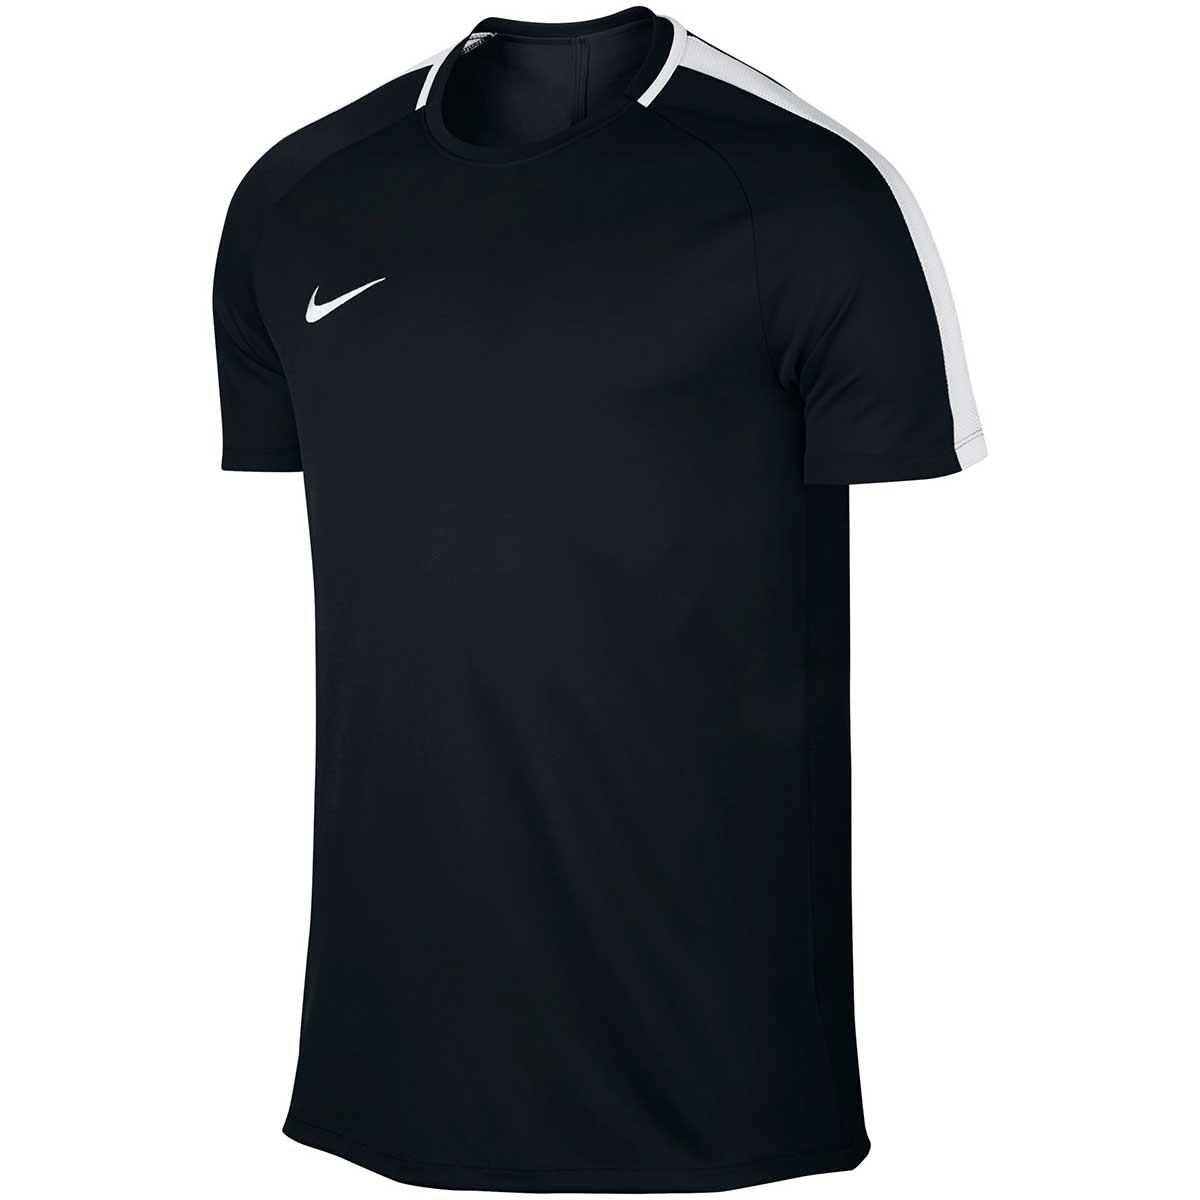 Buy Nike Men's Dry Academy Football T-Shirt (Black/White) Online